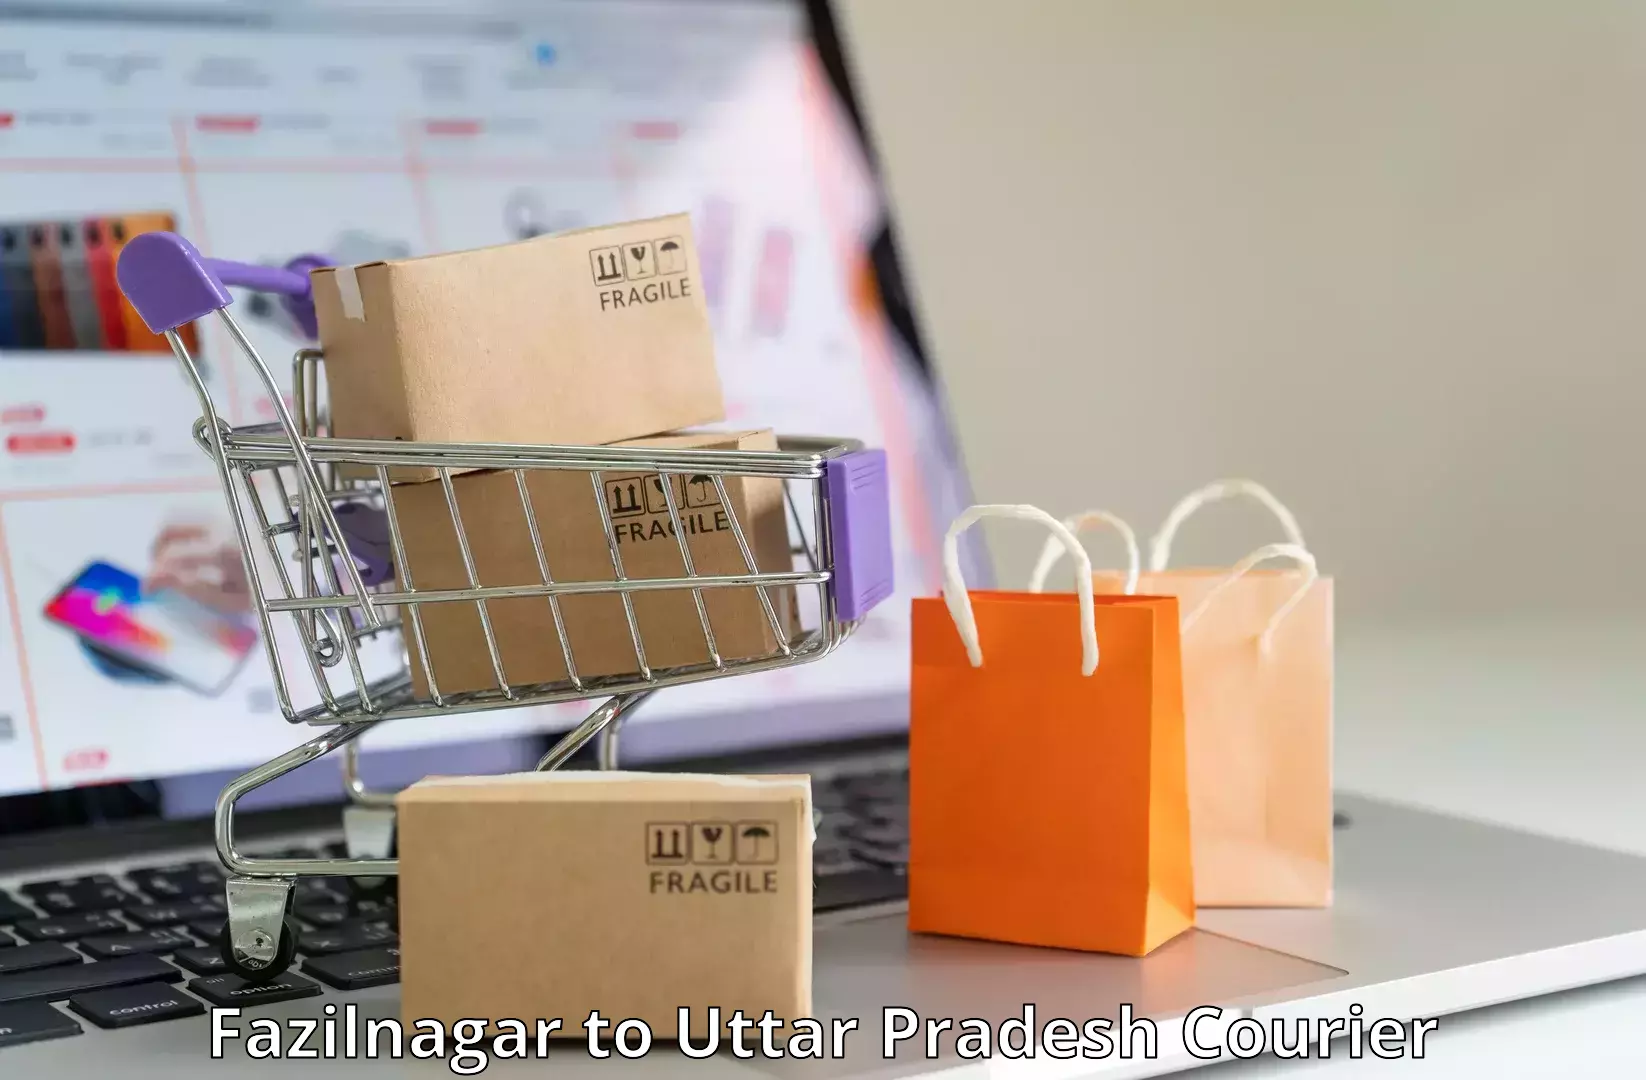 Business logistics support Fazilnagar to Firozabad